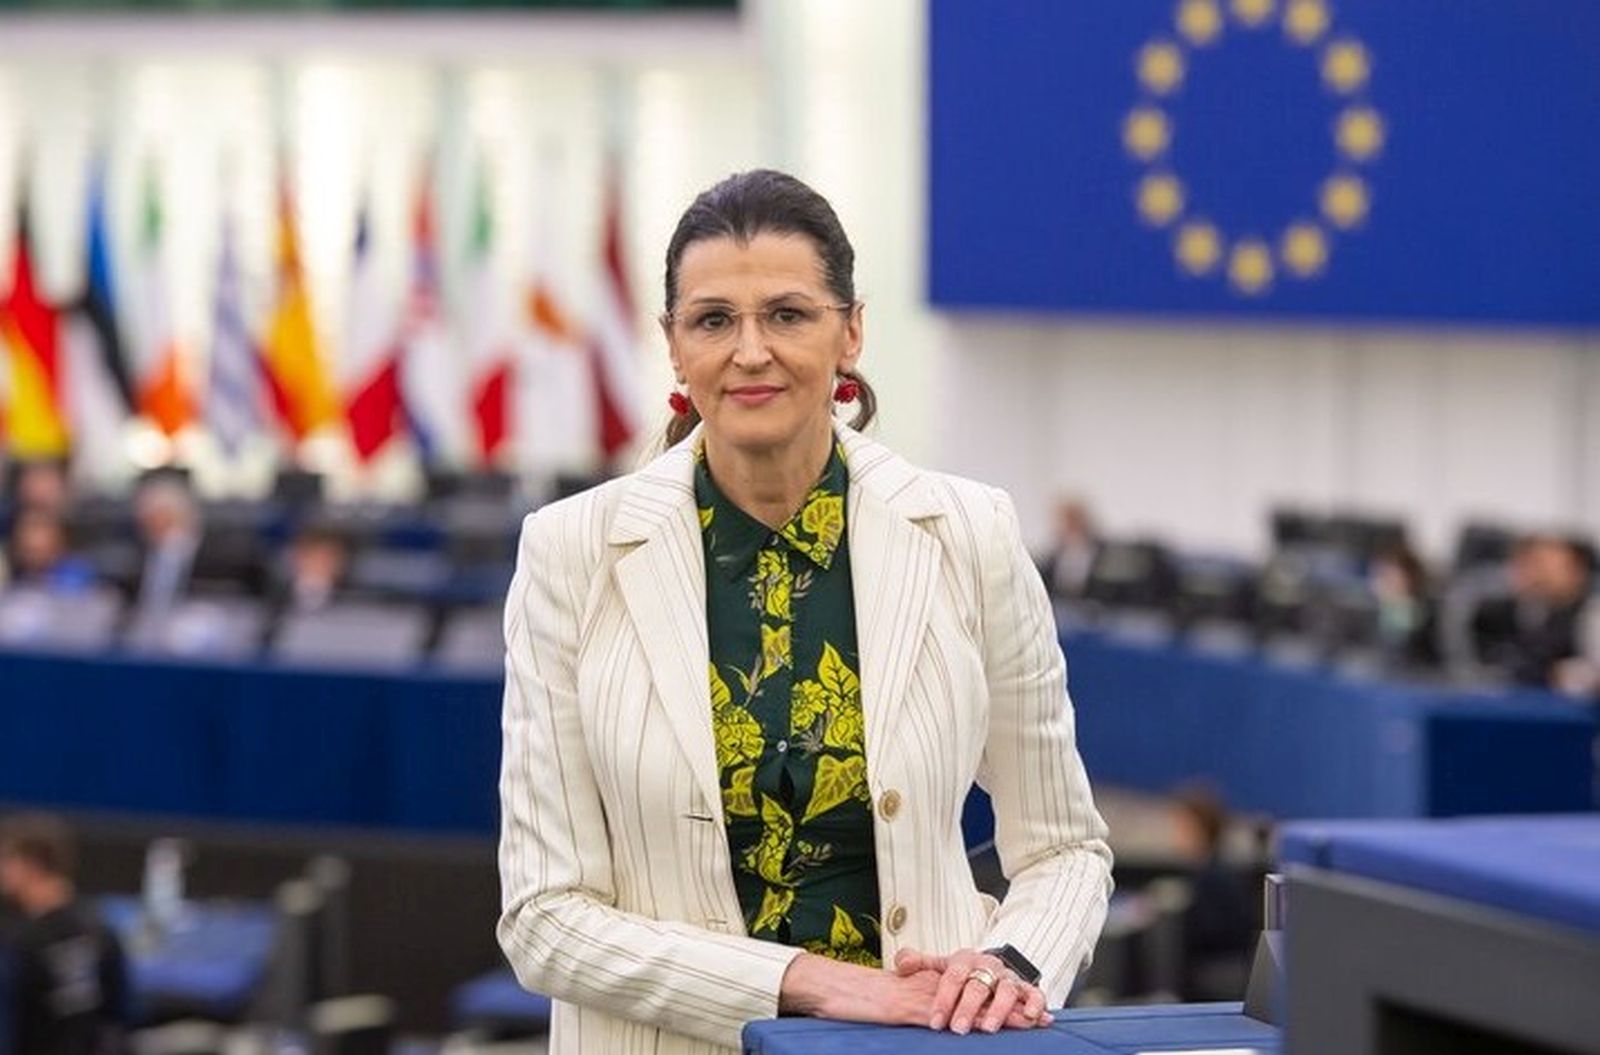 Romana JERKOVIC in the EP in Strasbourg